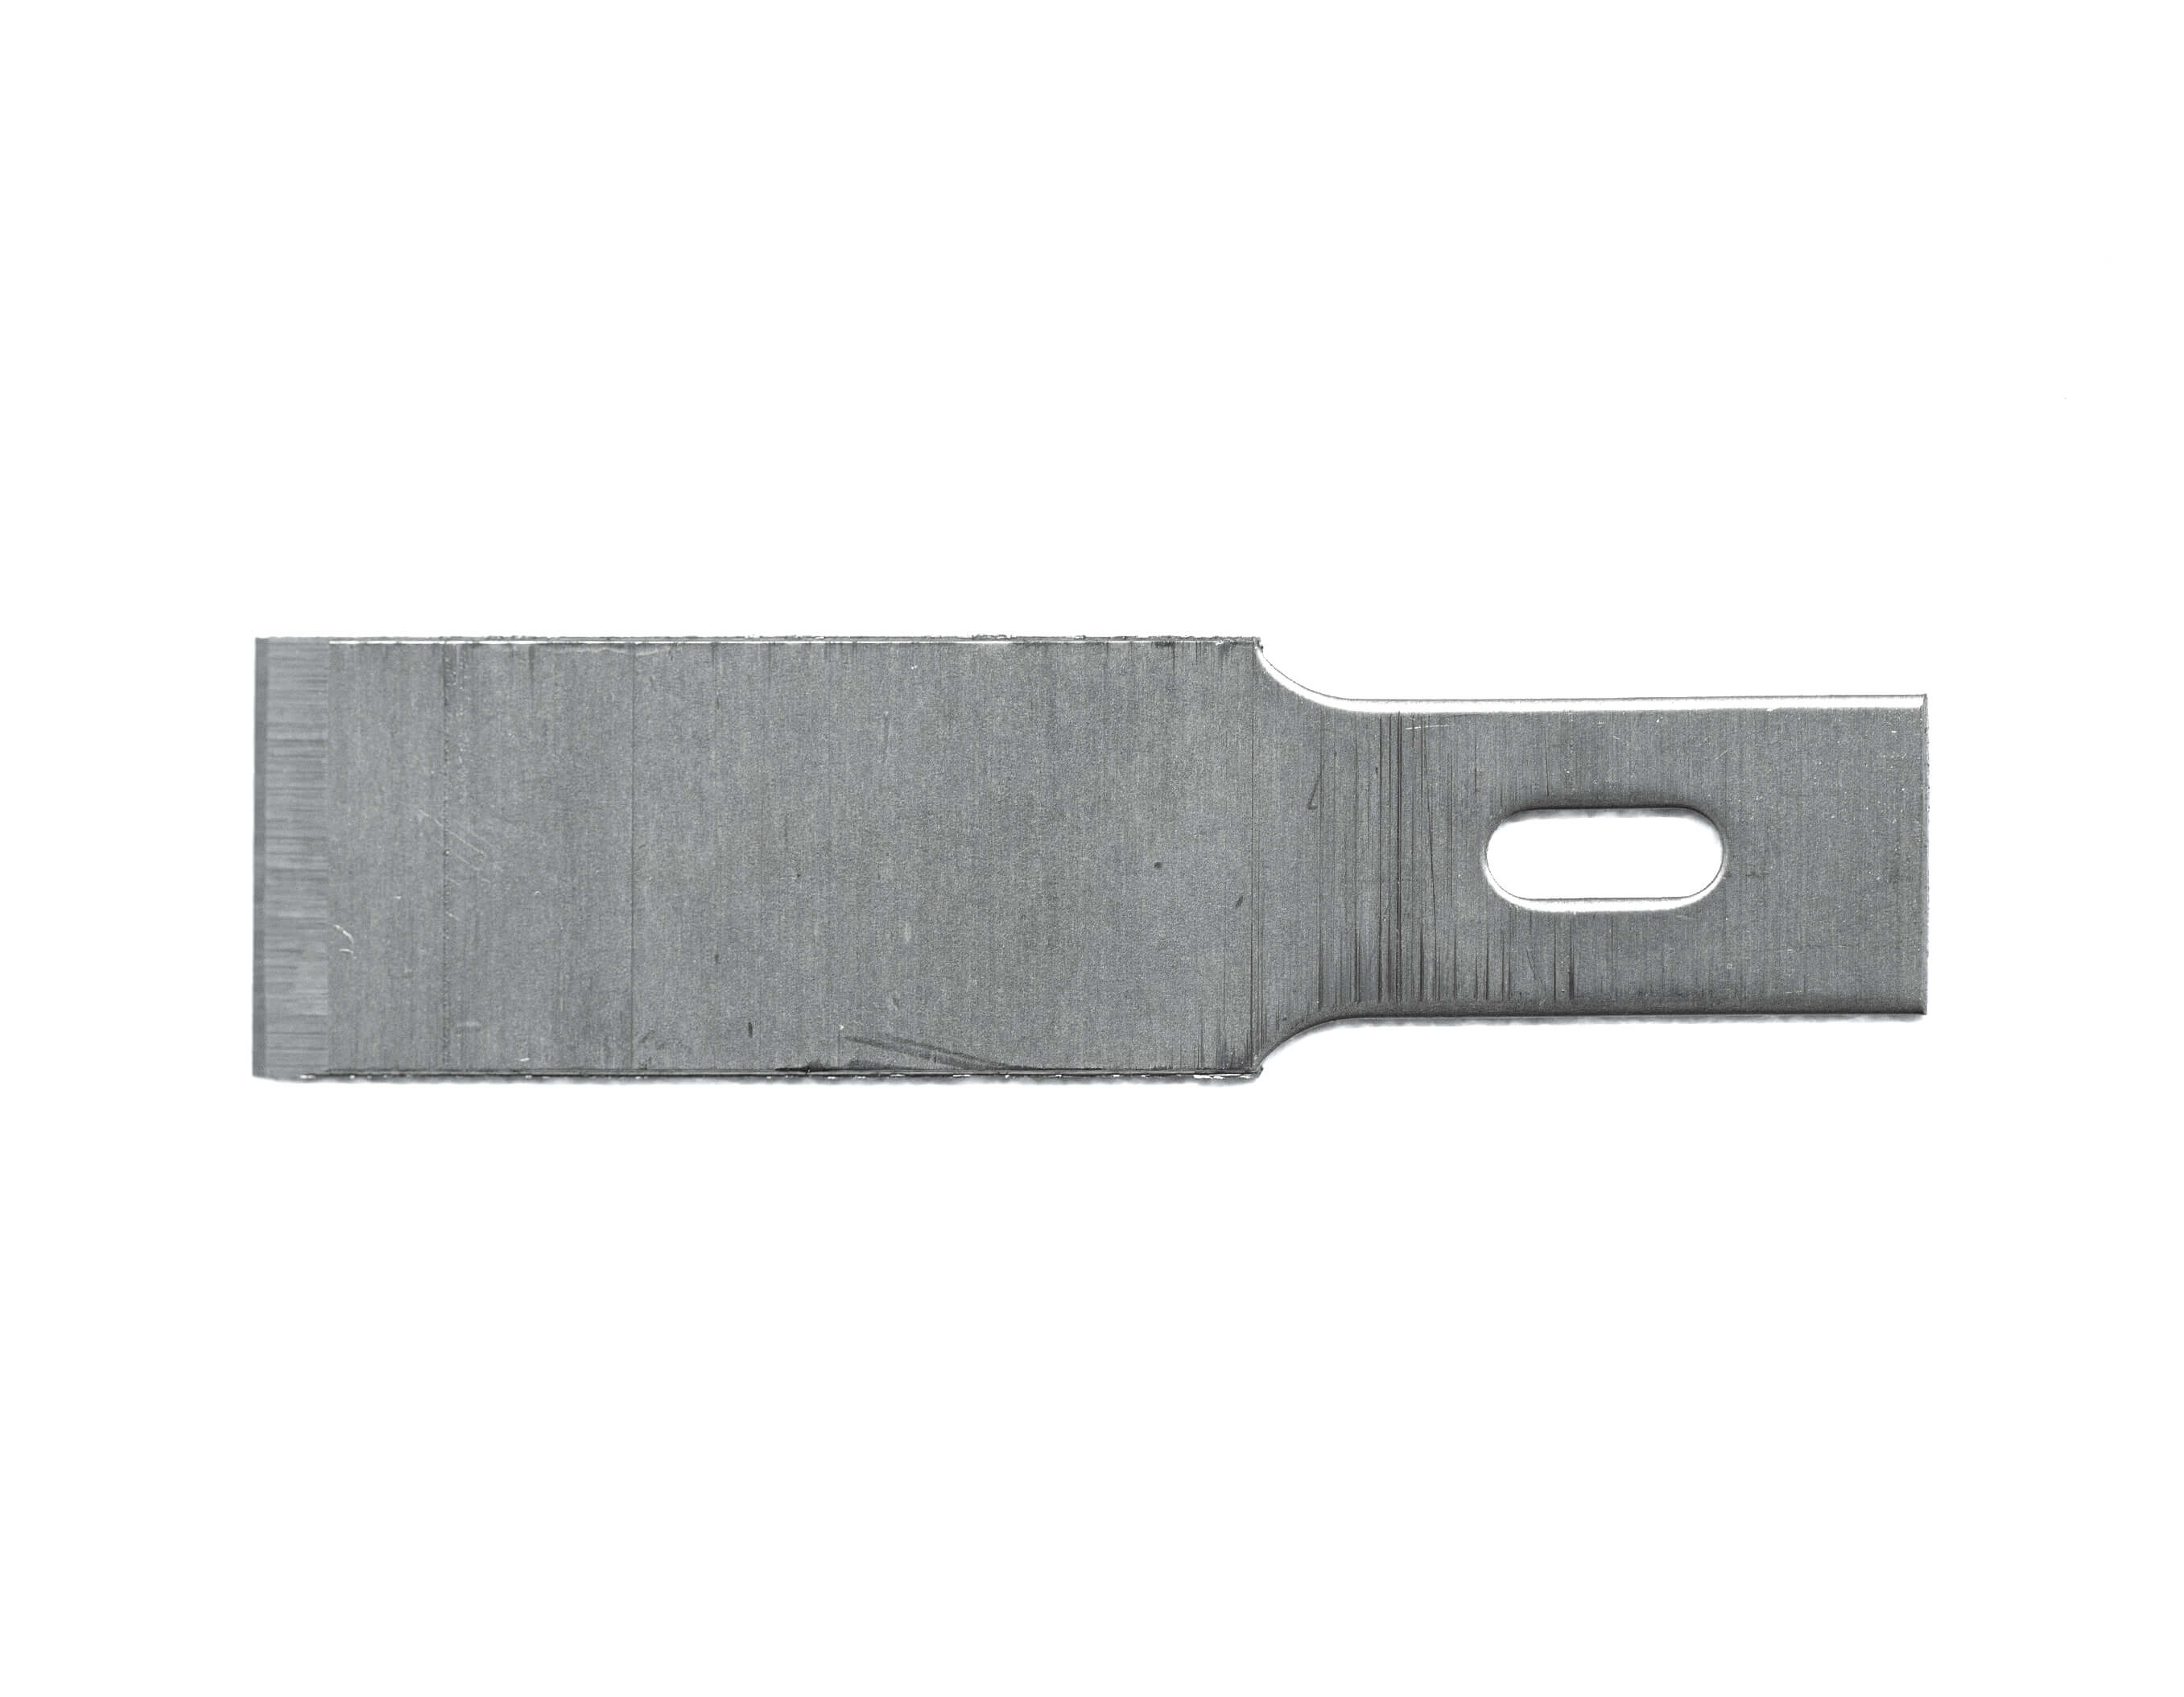 Scraper blade - 12mm